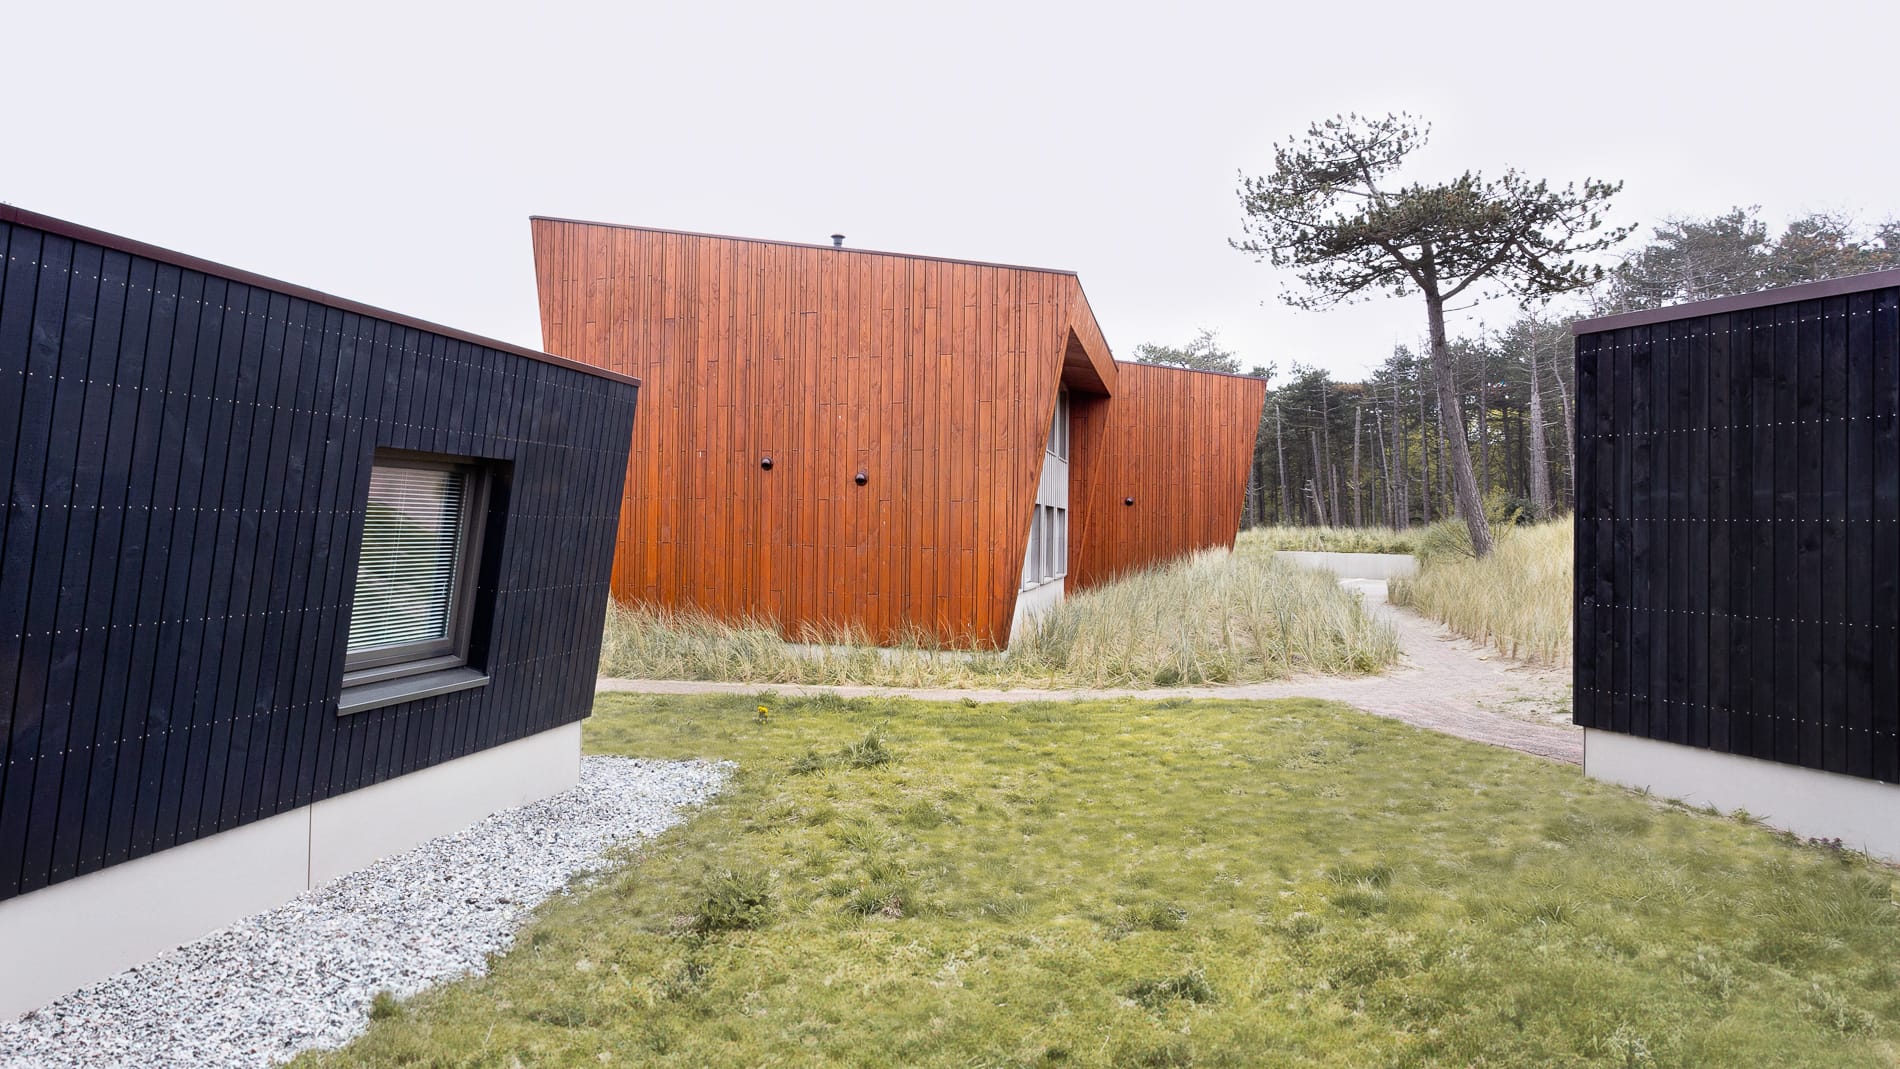 Studio Brandvries | houtbouw studiowoning op camping stortemelk vlieland door architectenbureau rotterdam